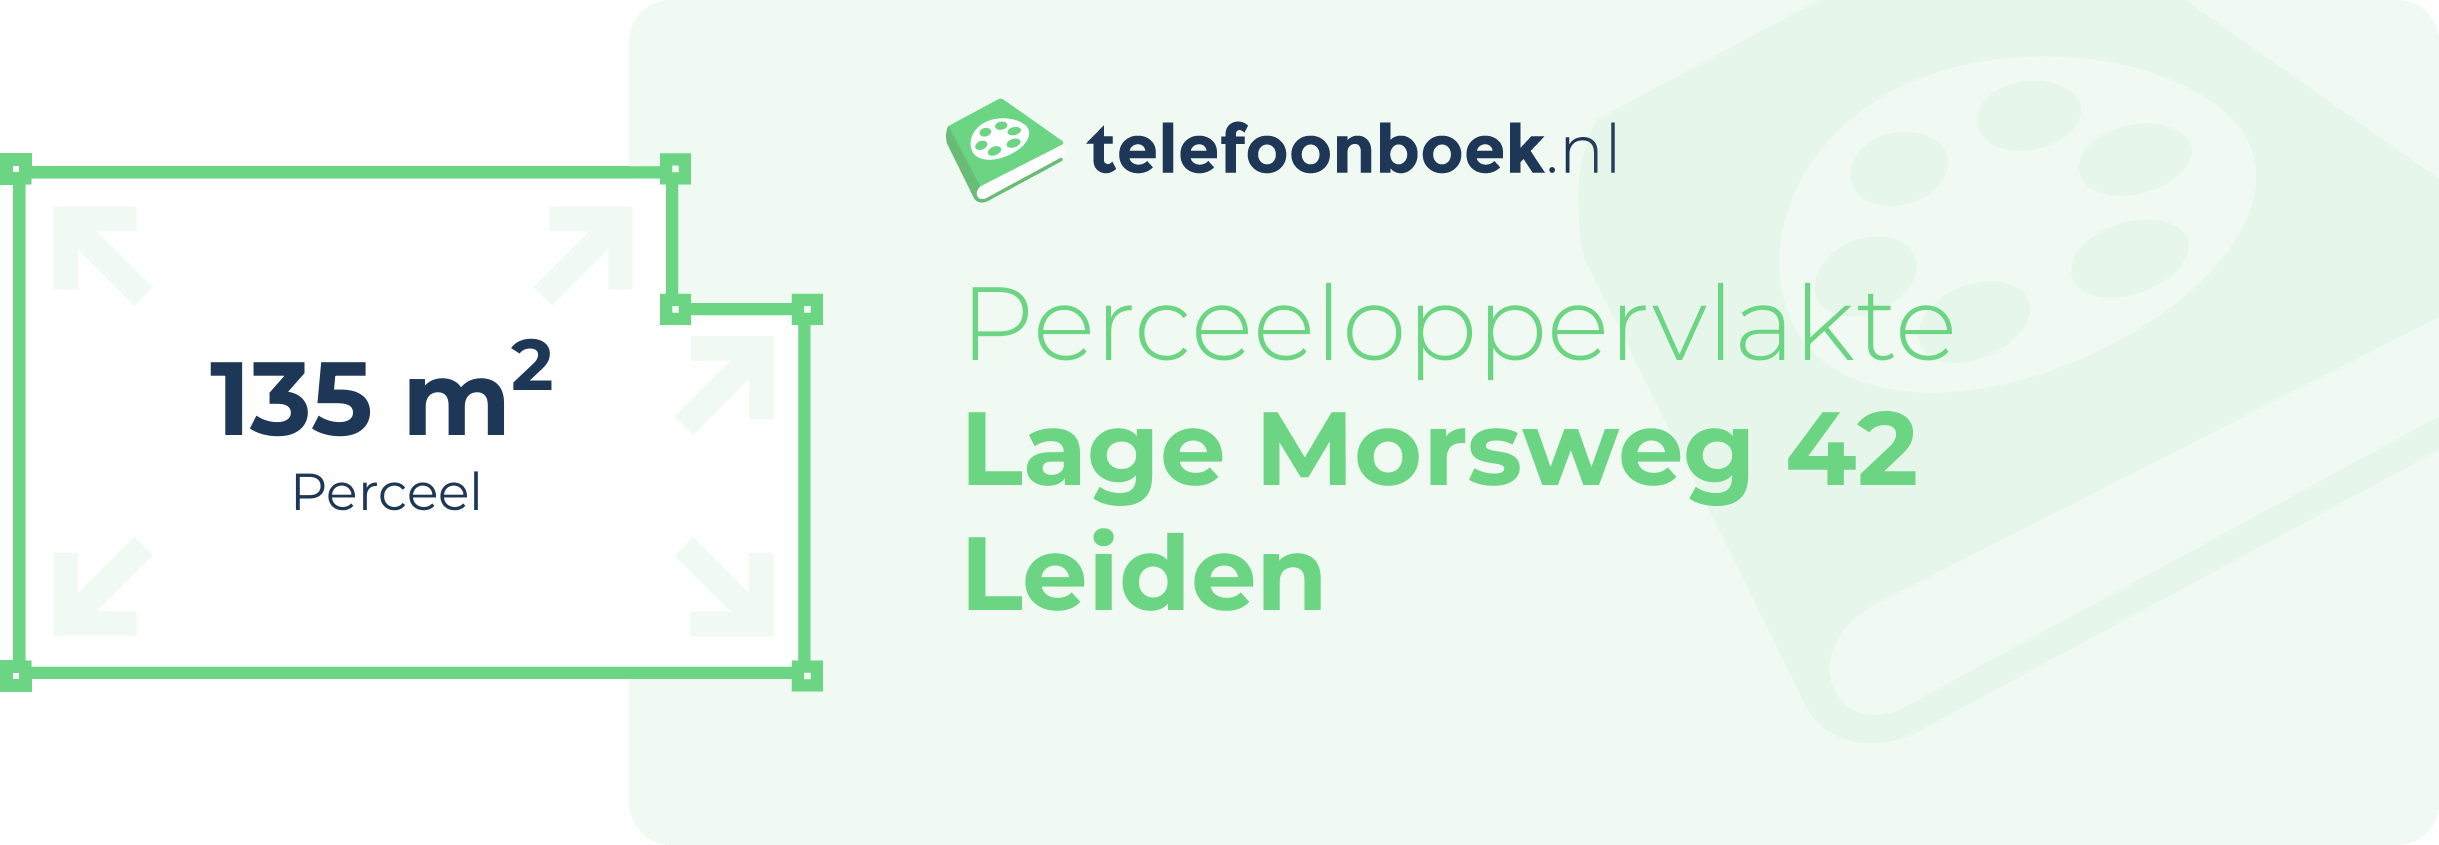 Perceeloppervlakte Lage Morsweg 42 Leiden